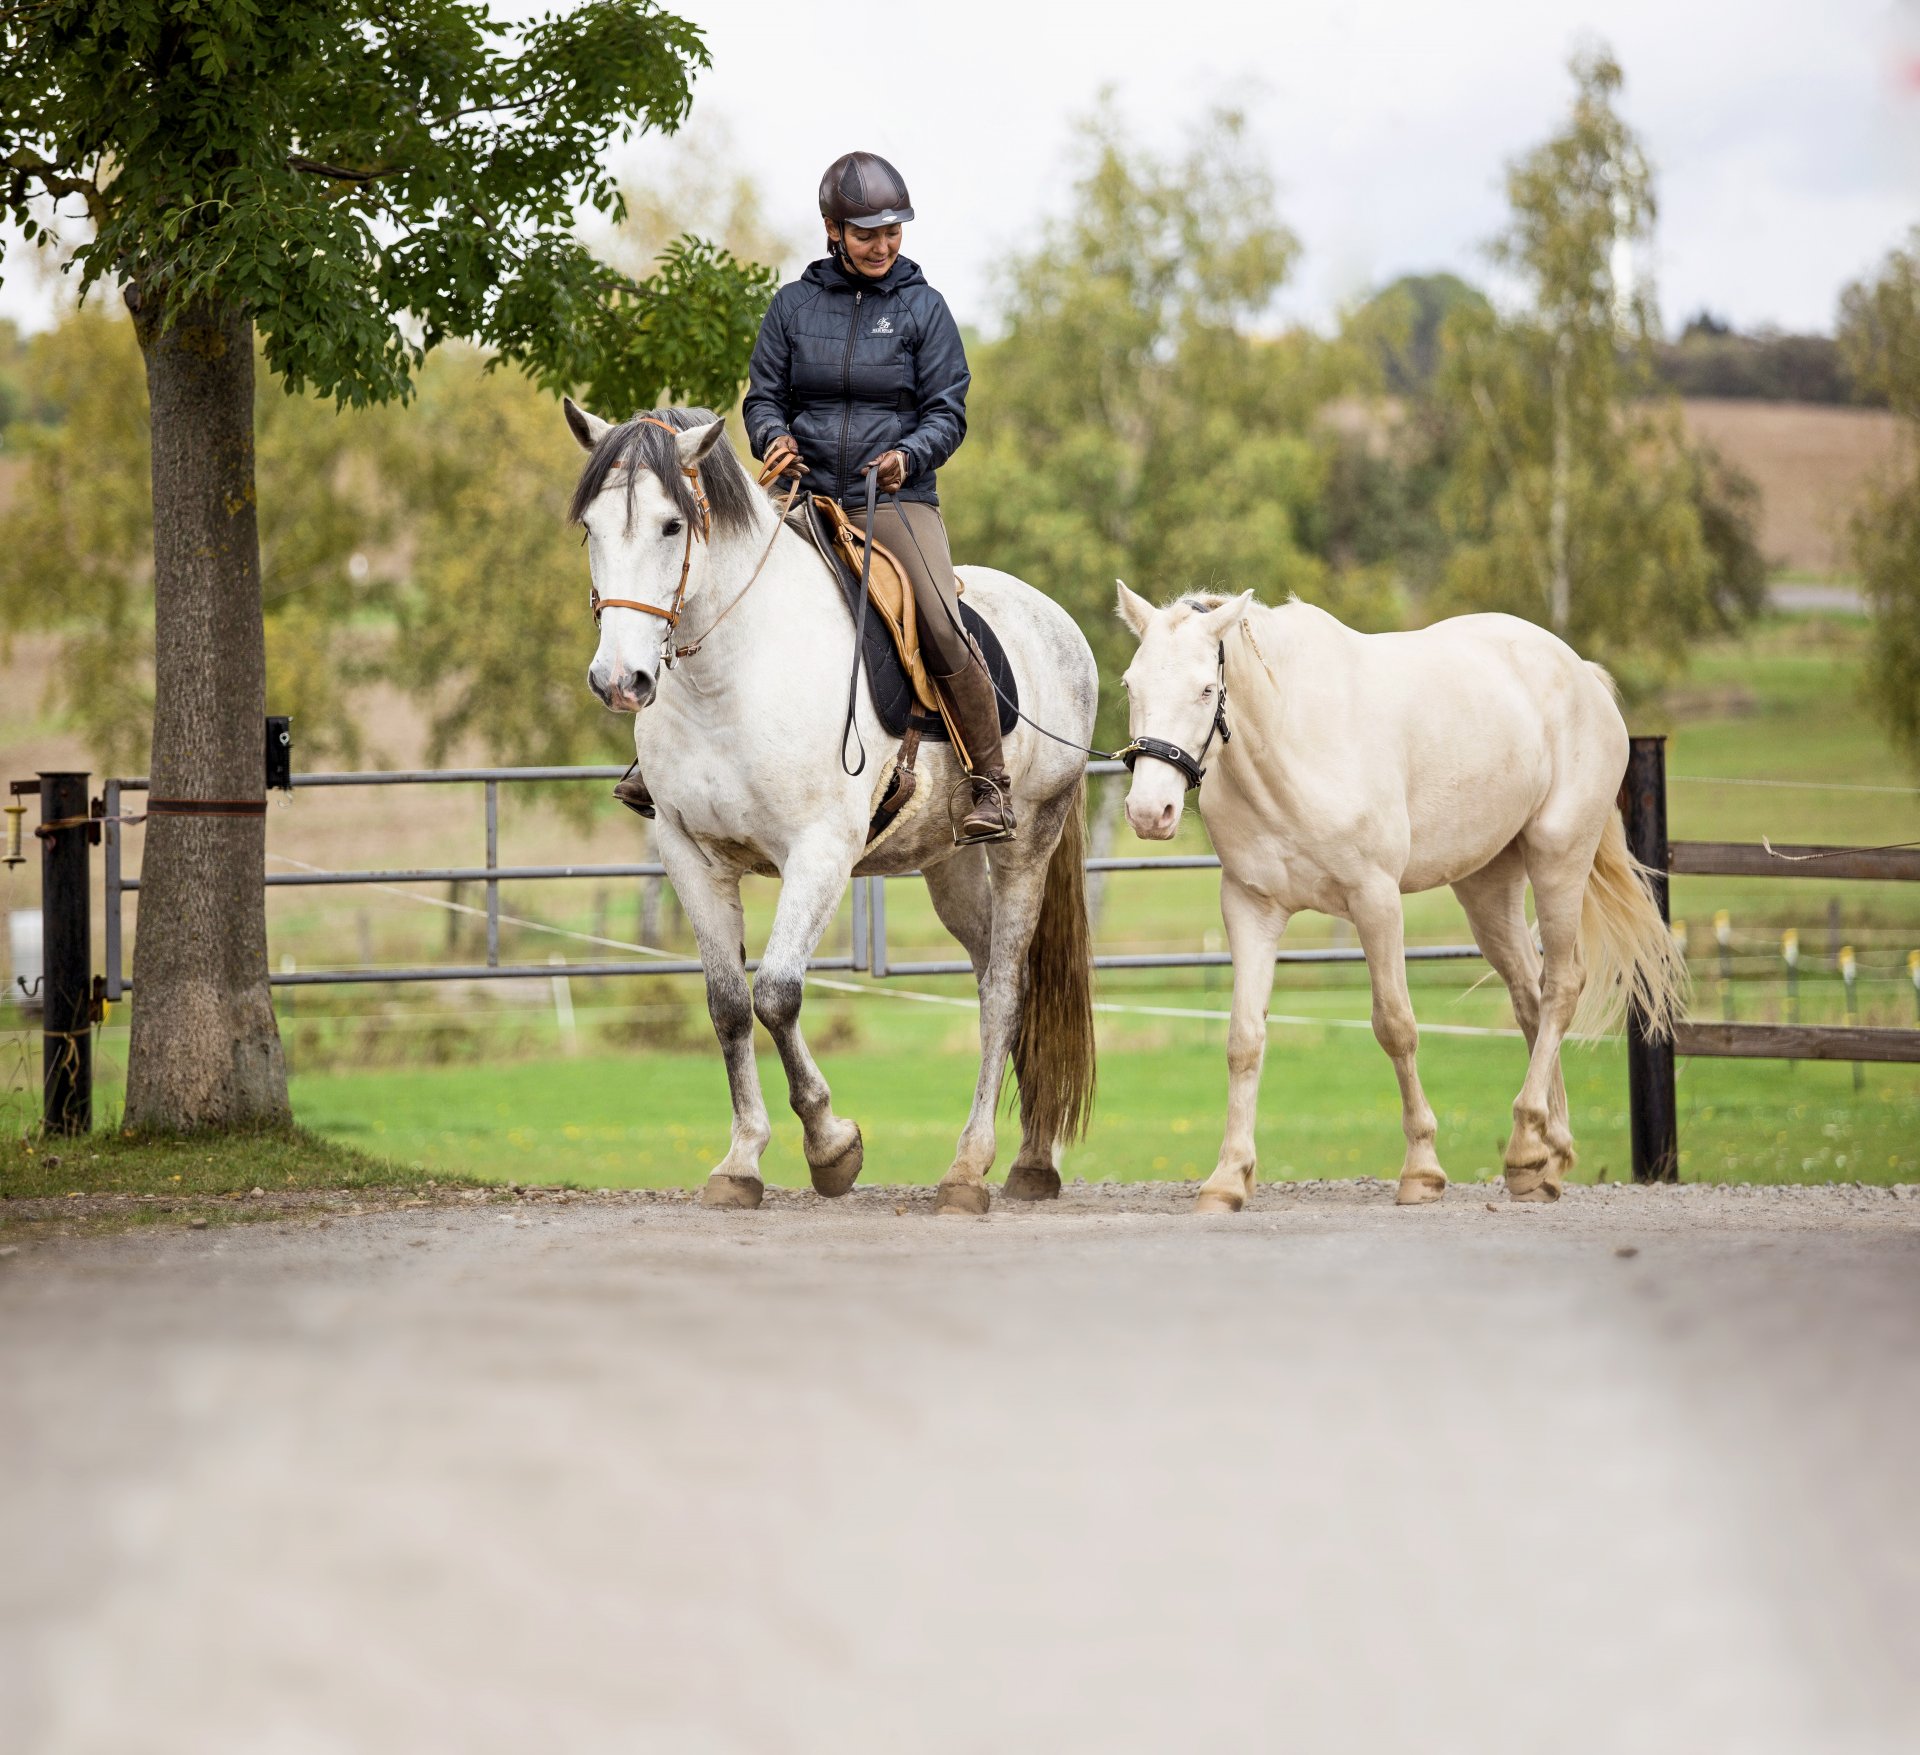 Vezmu tě na ruku: Mladí koně se spolu se zkušenými zvířaty učí přijímat podněty prostředí v klidu